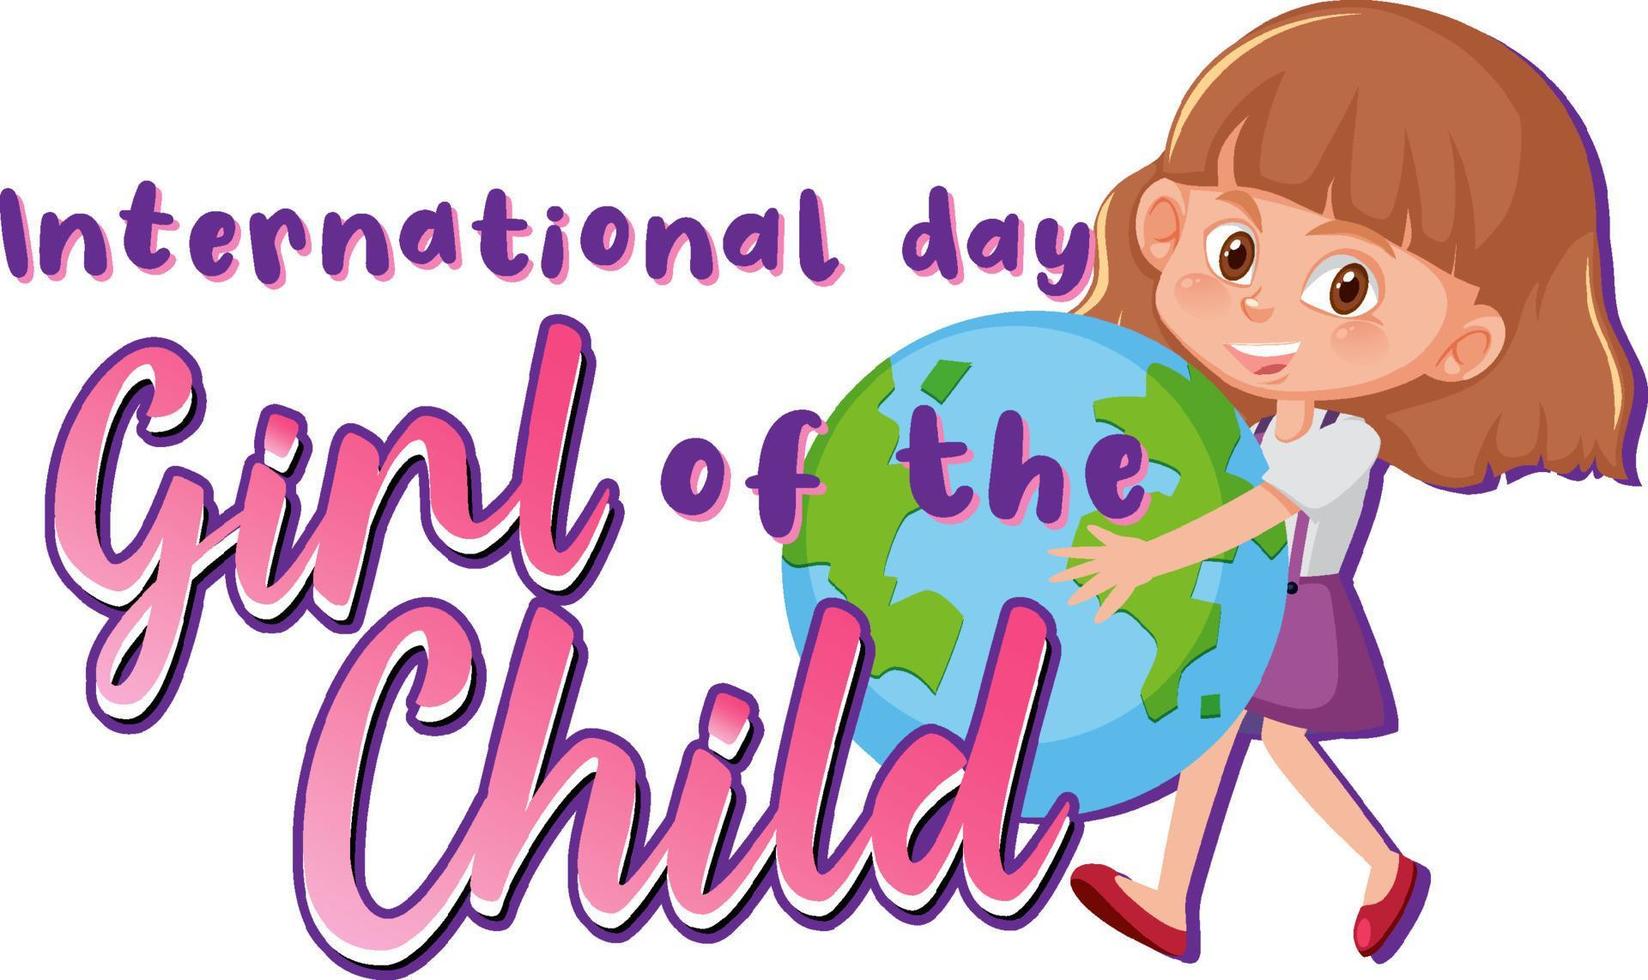 International day of girl child banner design vector